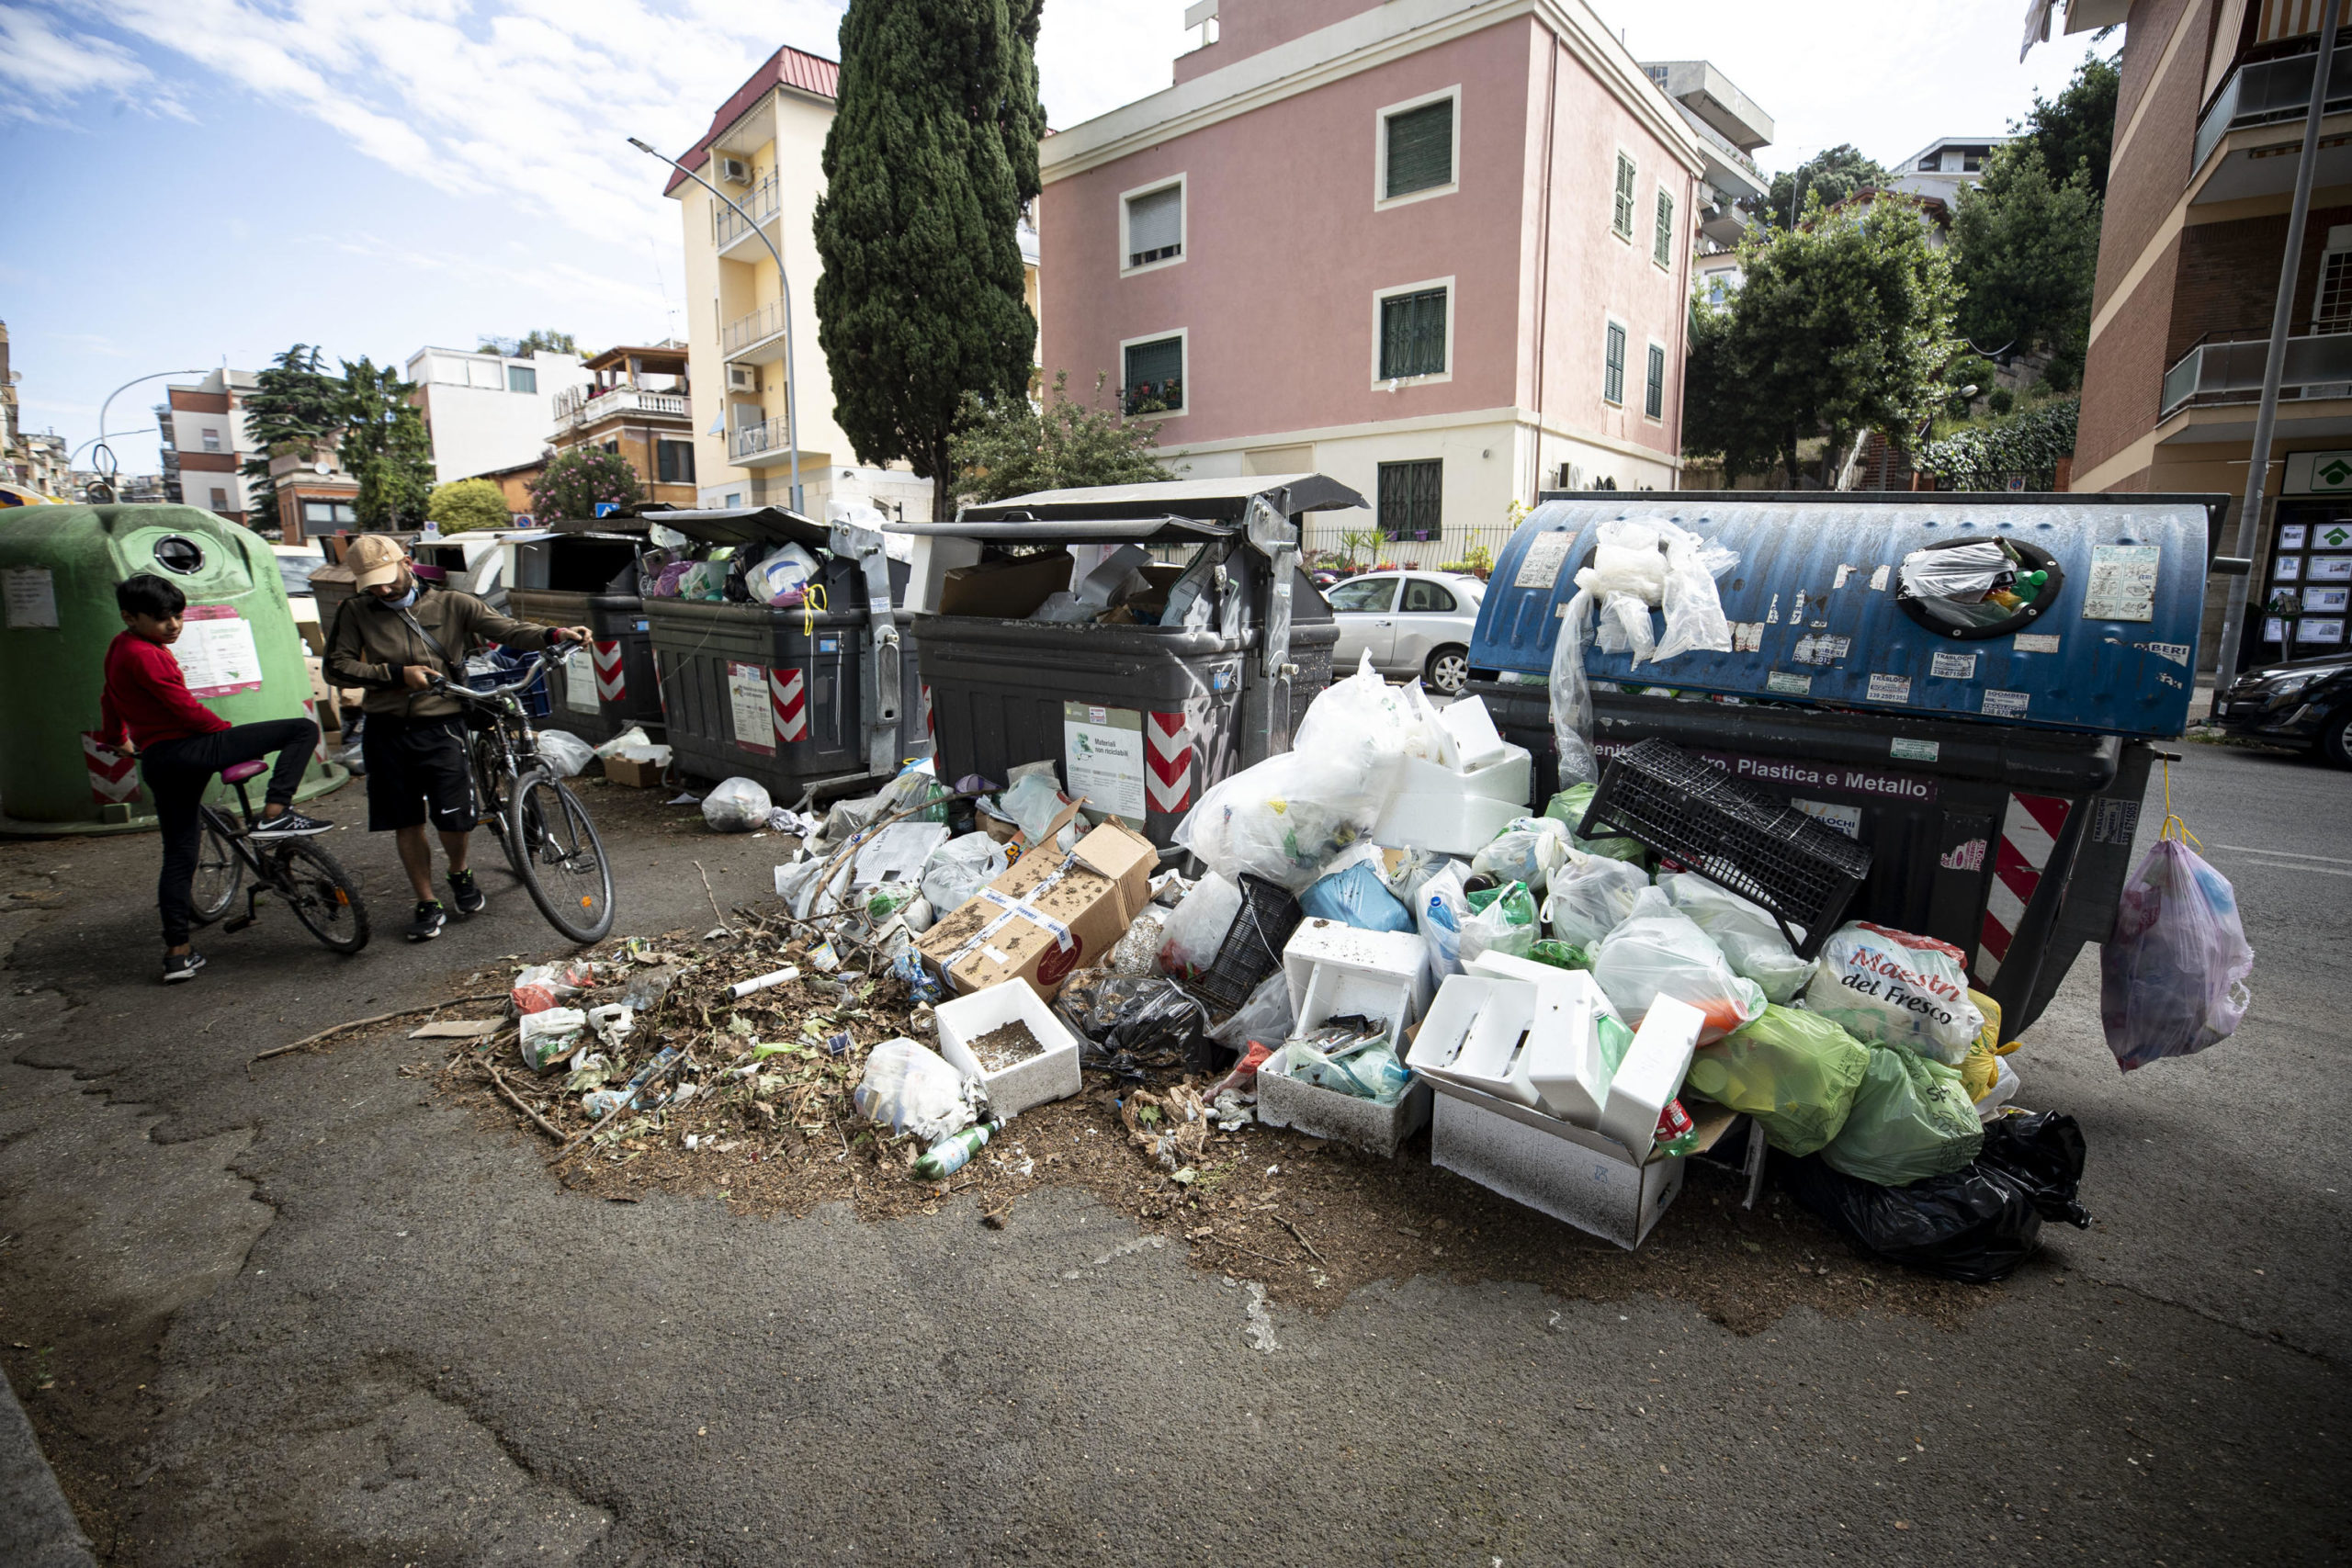 Anche in via degli Orti della Farnesina i rifiuti vengono lasciati fuori dai cassonetti